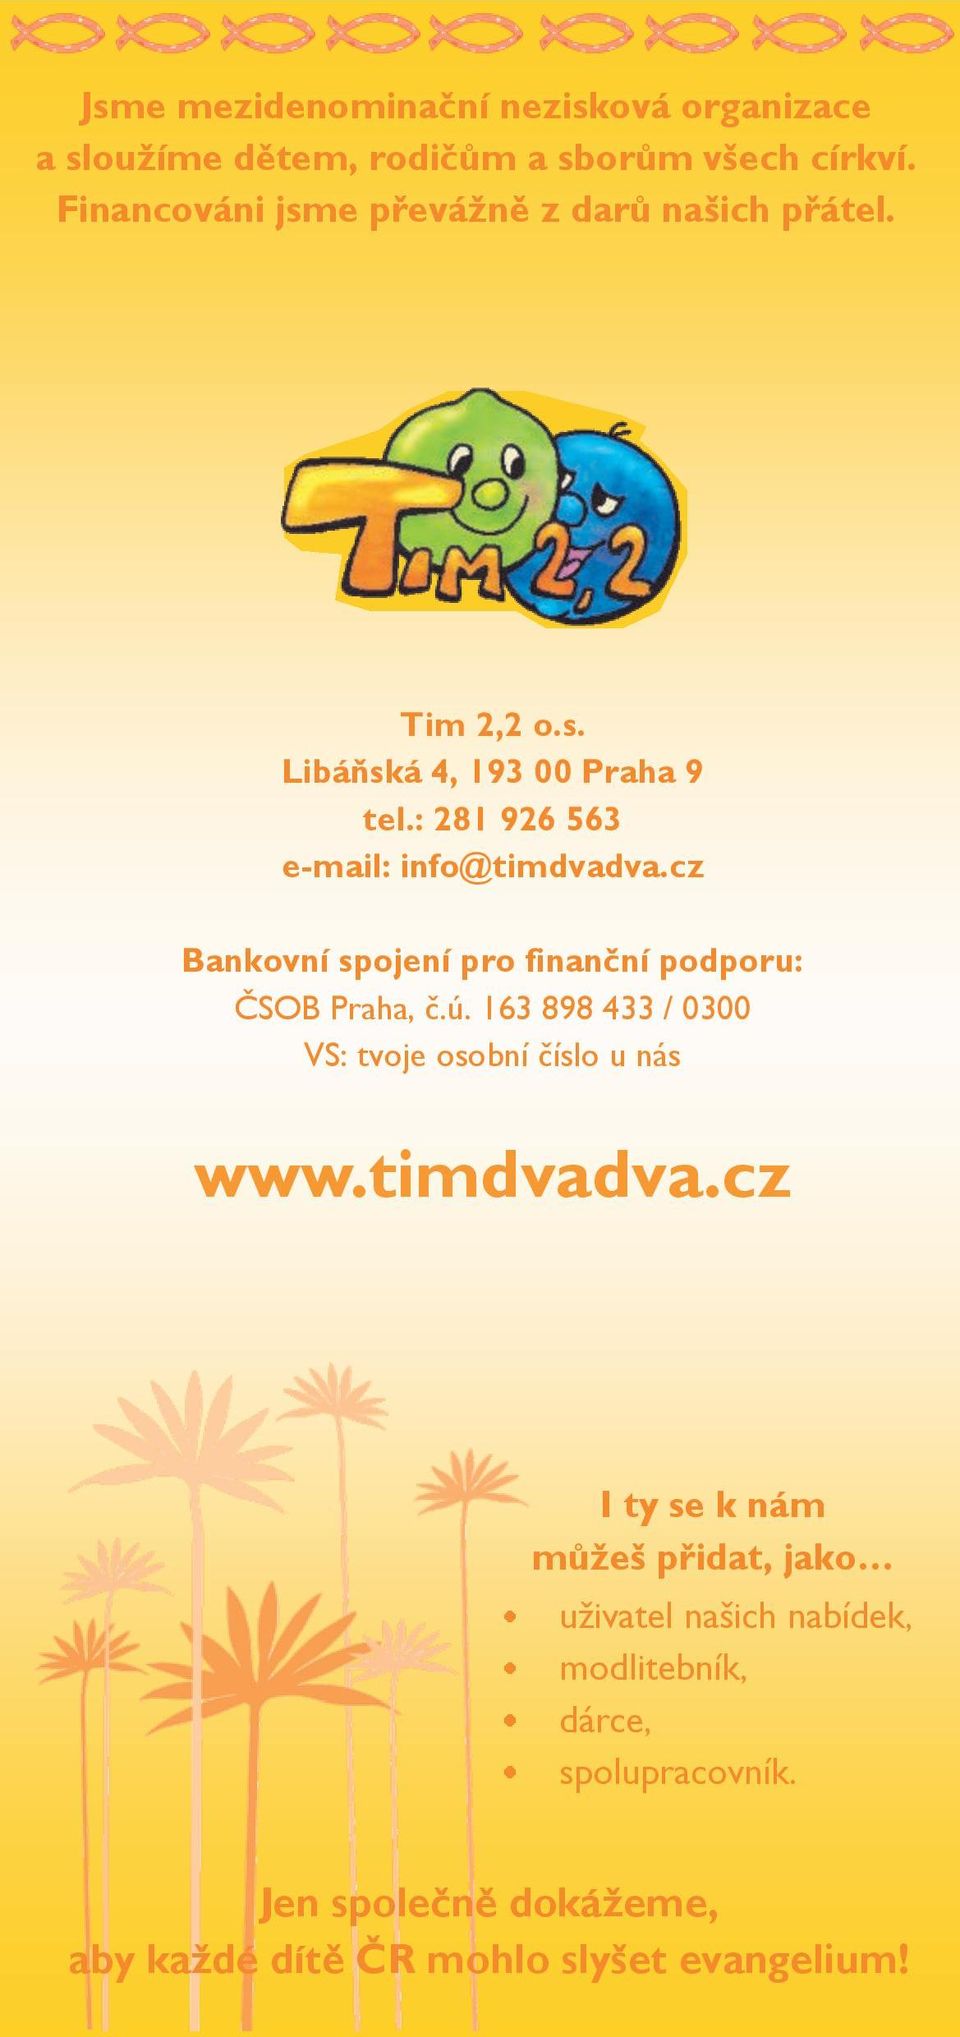 : 281 926 563 e-mail: info@timdvadva.cz Bankovní spojení pro finanční podporu: ČSOB Praha, č.ú.